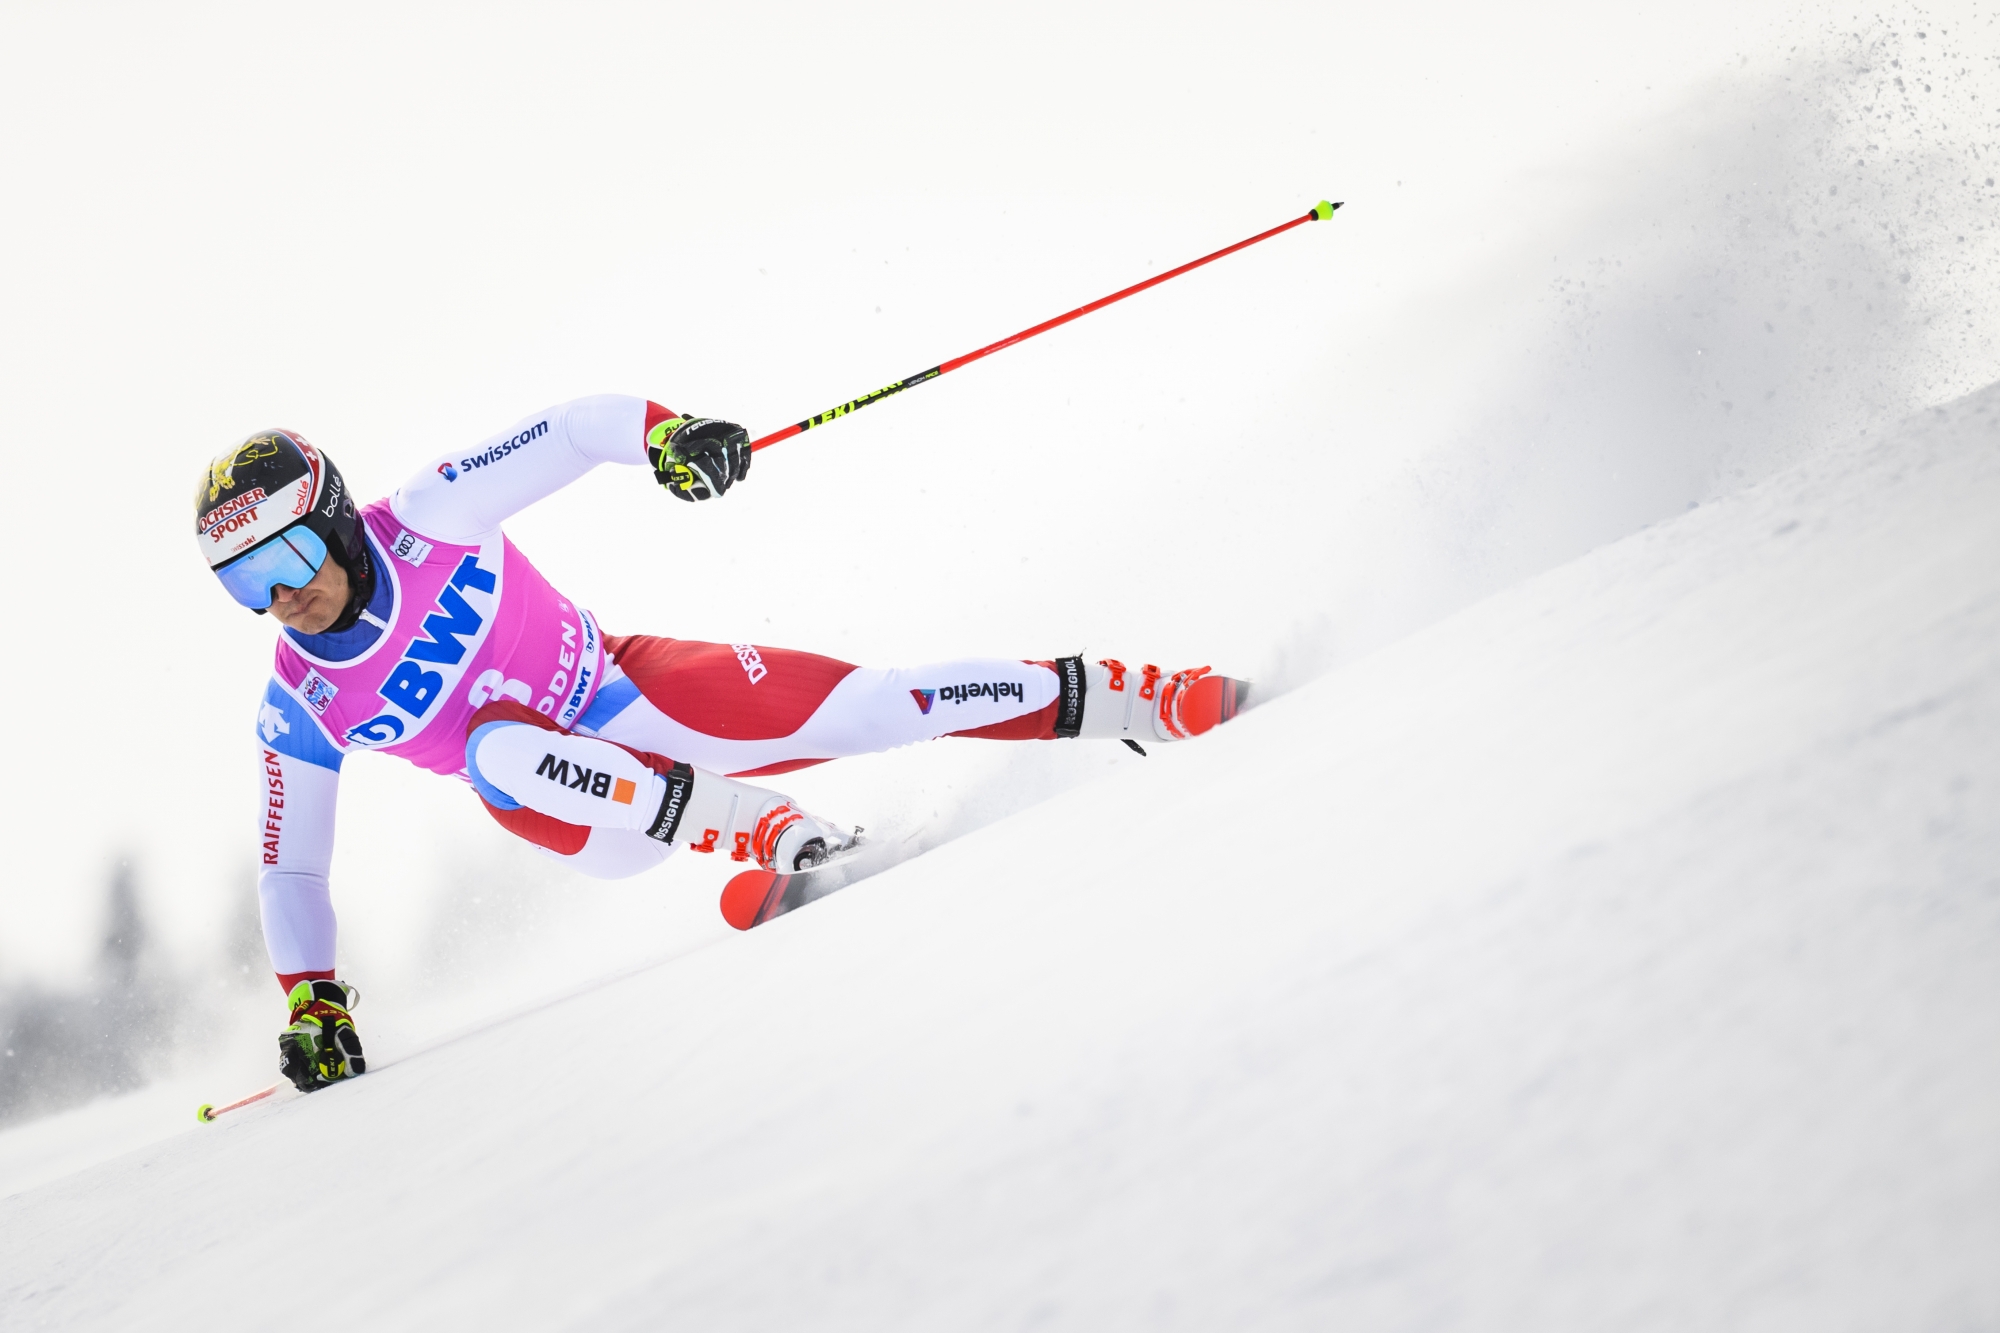 Loïc Meillard sera davantage attendu en slalom géant. Il a décroché trois tops 5, dont un 2e rang, dans cette discipline cette saison en Coupe du monde.